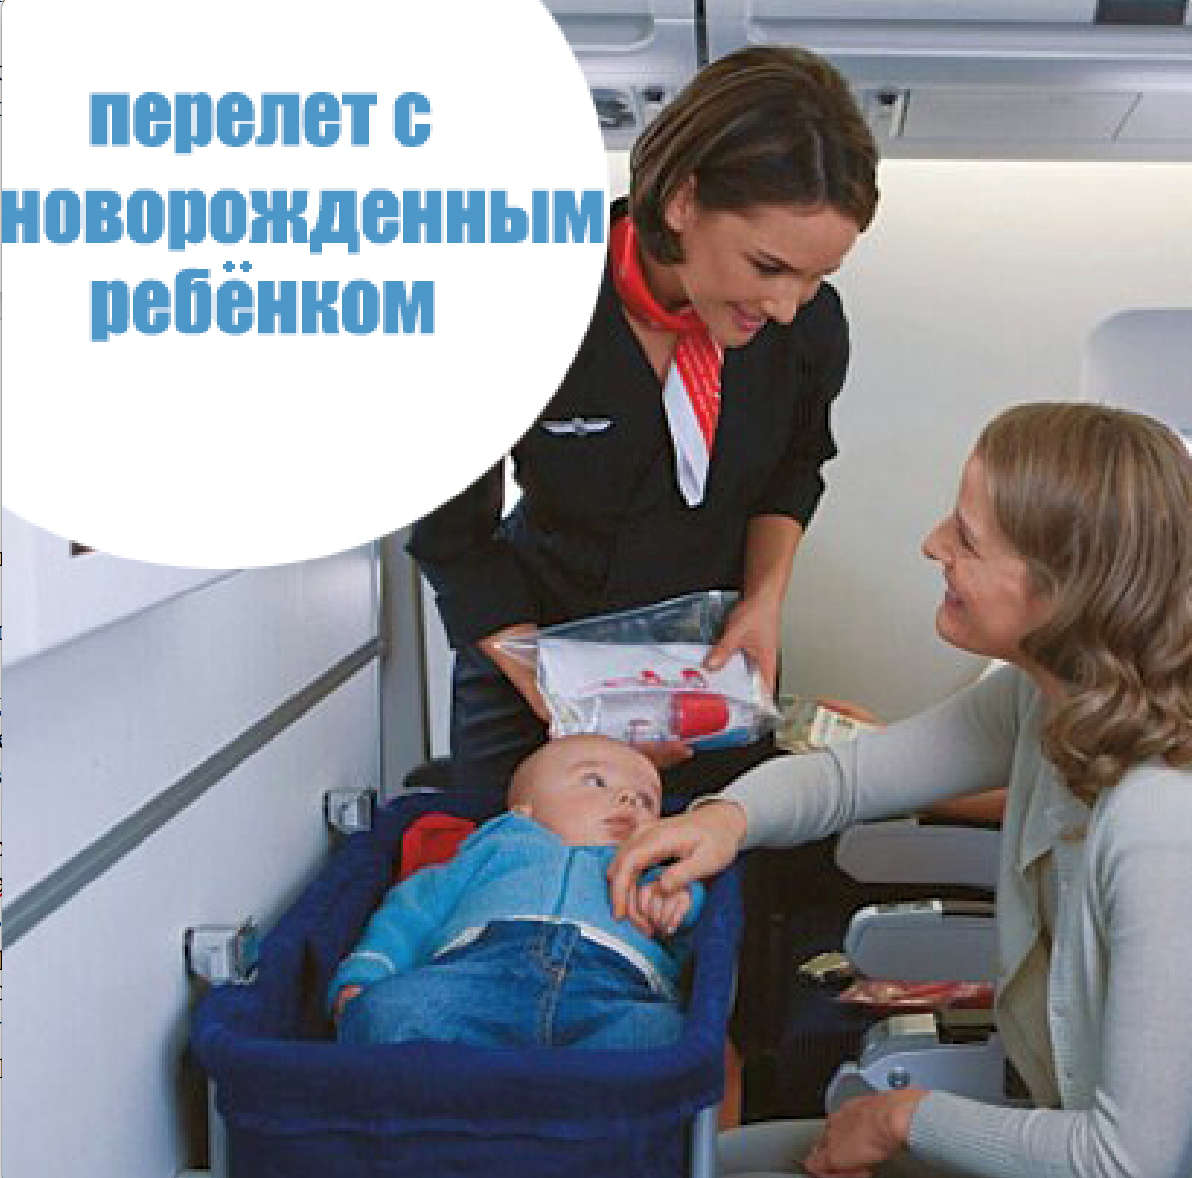 Ребенок без сопровождения в самолете. Авиаперелет с грудным ребенком. Люлька в самолете для ребенка. Перелет с грудничком. Младенец в самолете.